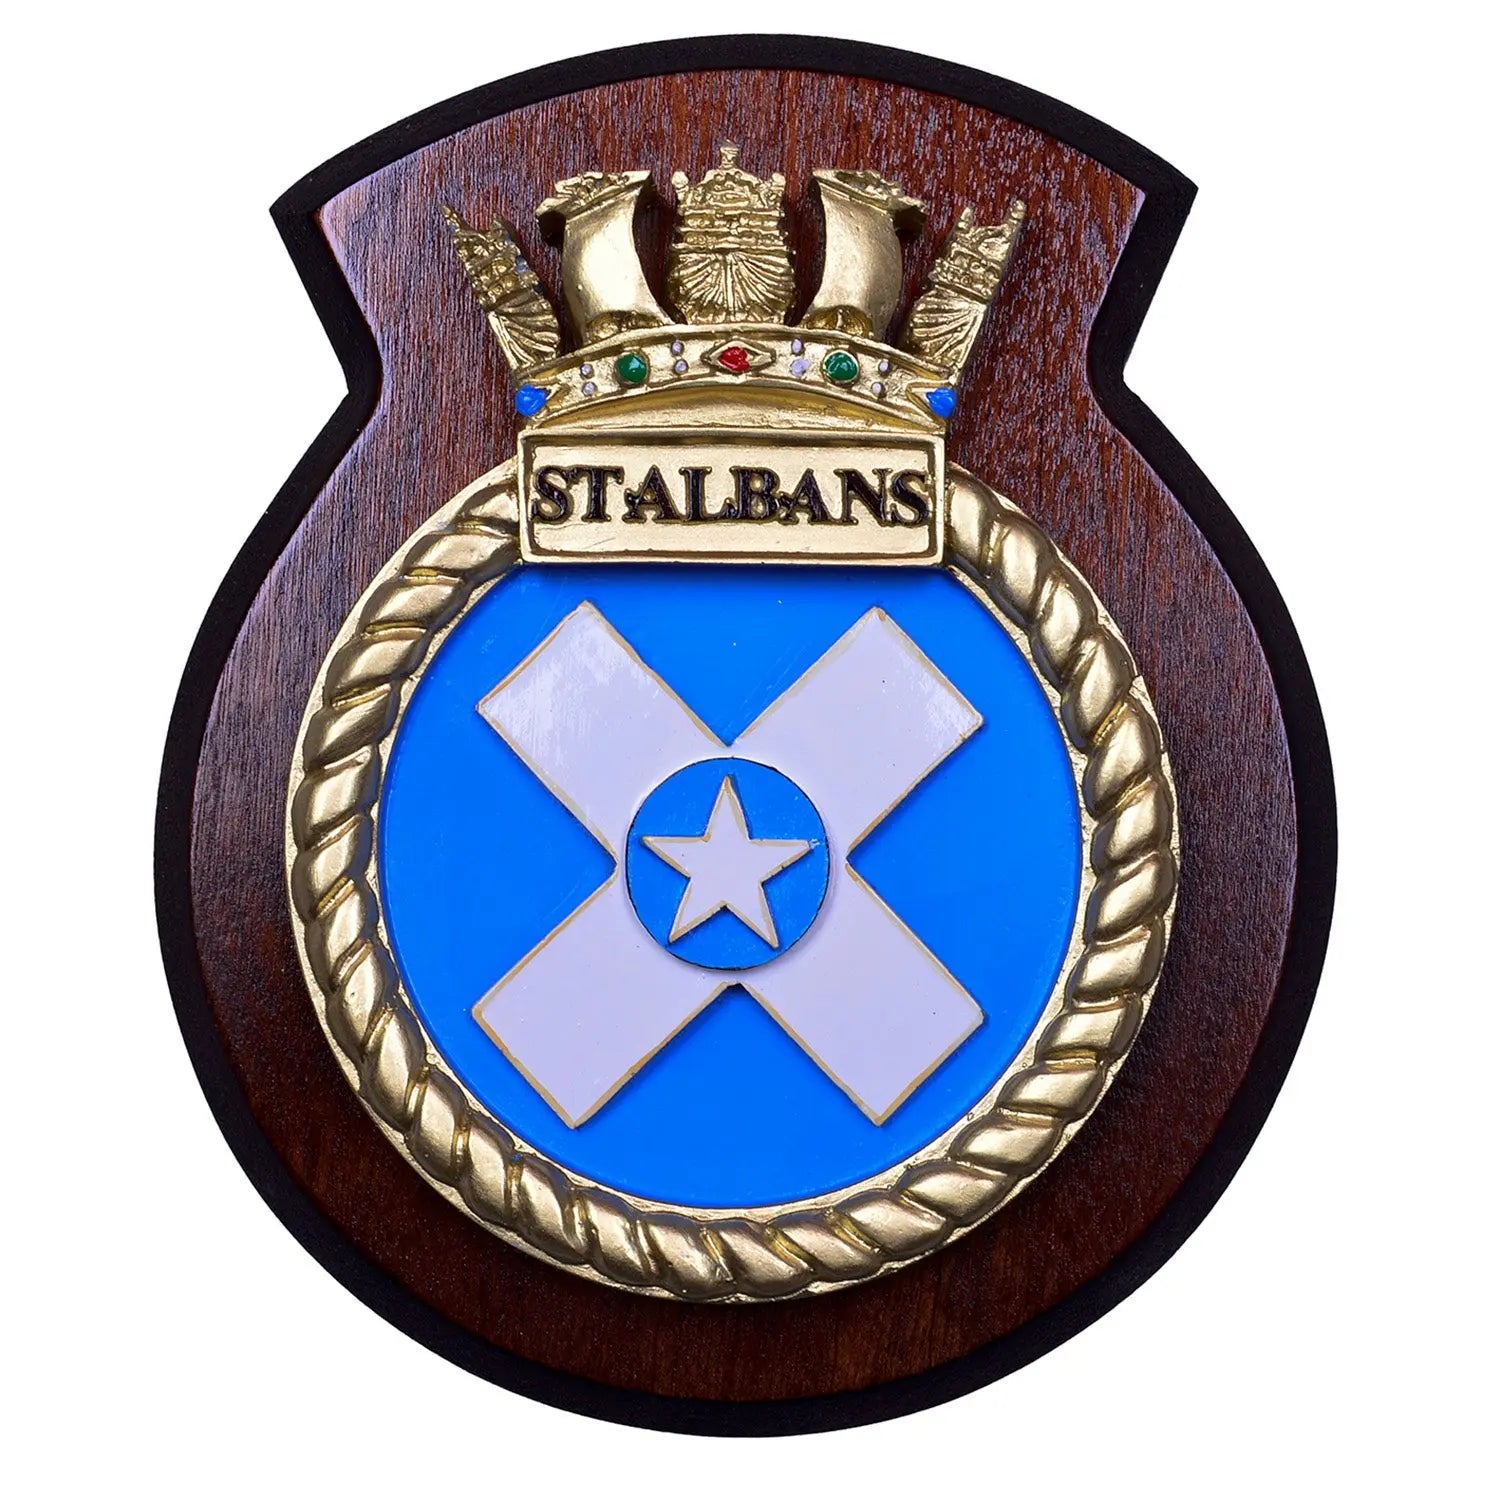 HMS ST Albans Ship Plaque / Crest wyedean